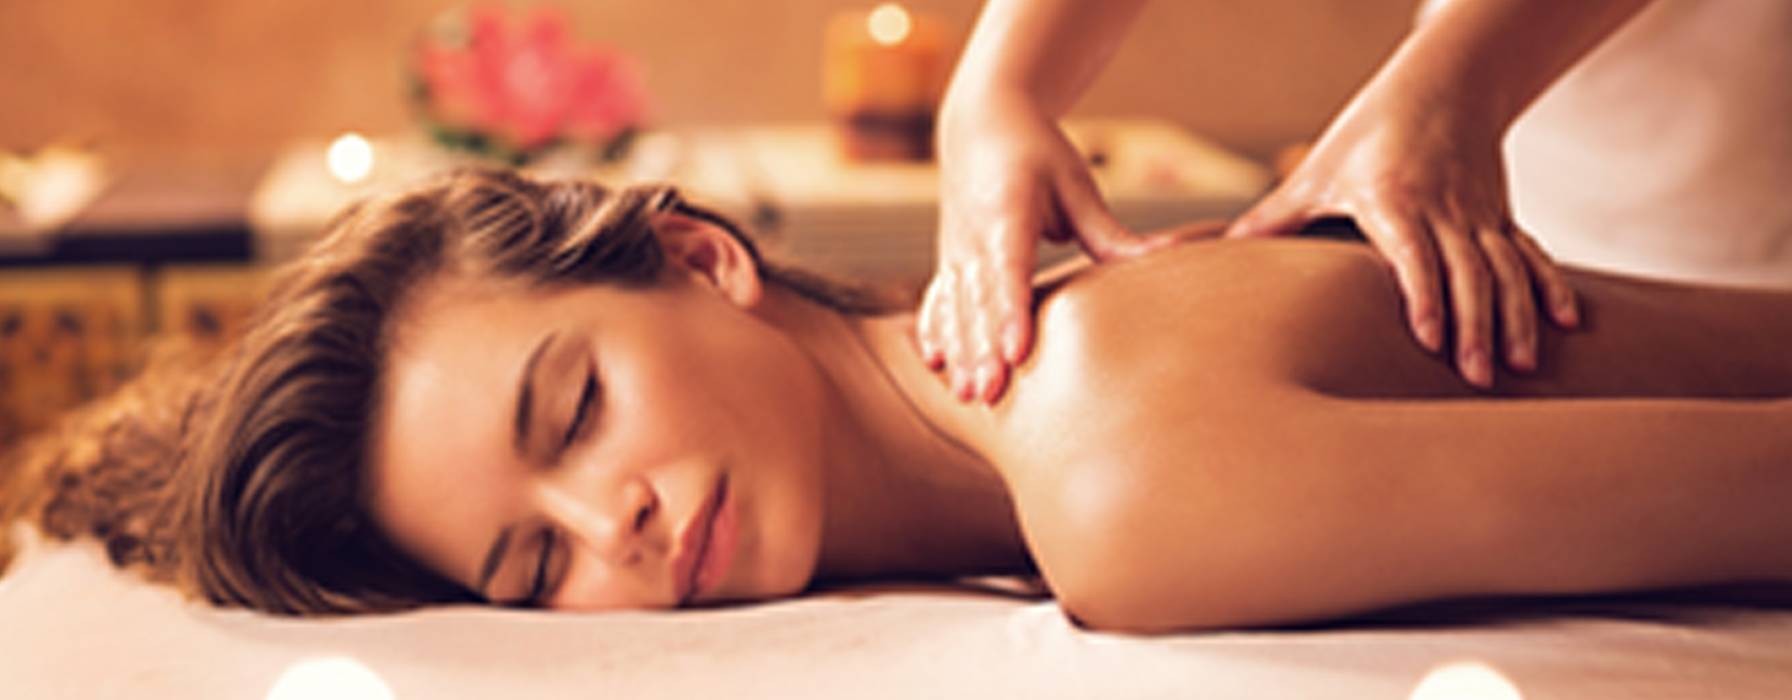 Comment bien faire un massage relaxant ? - Magazine - Weleda